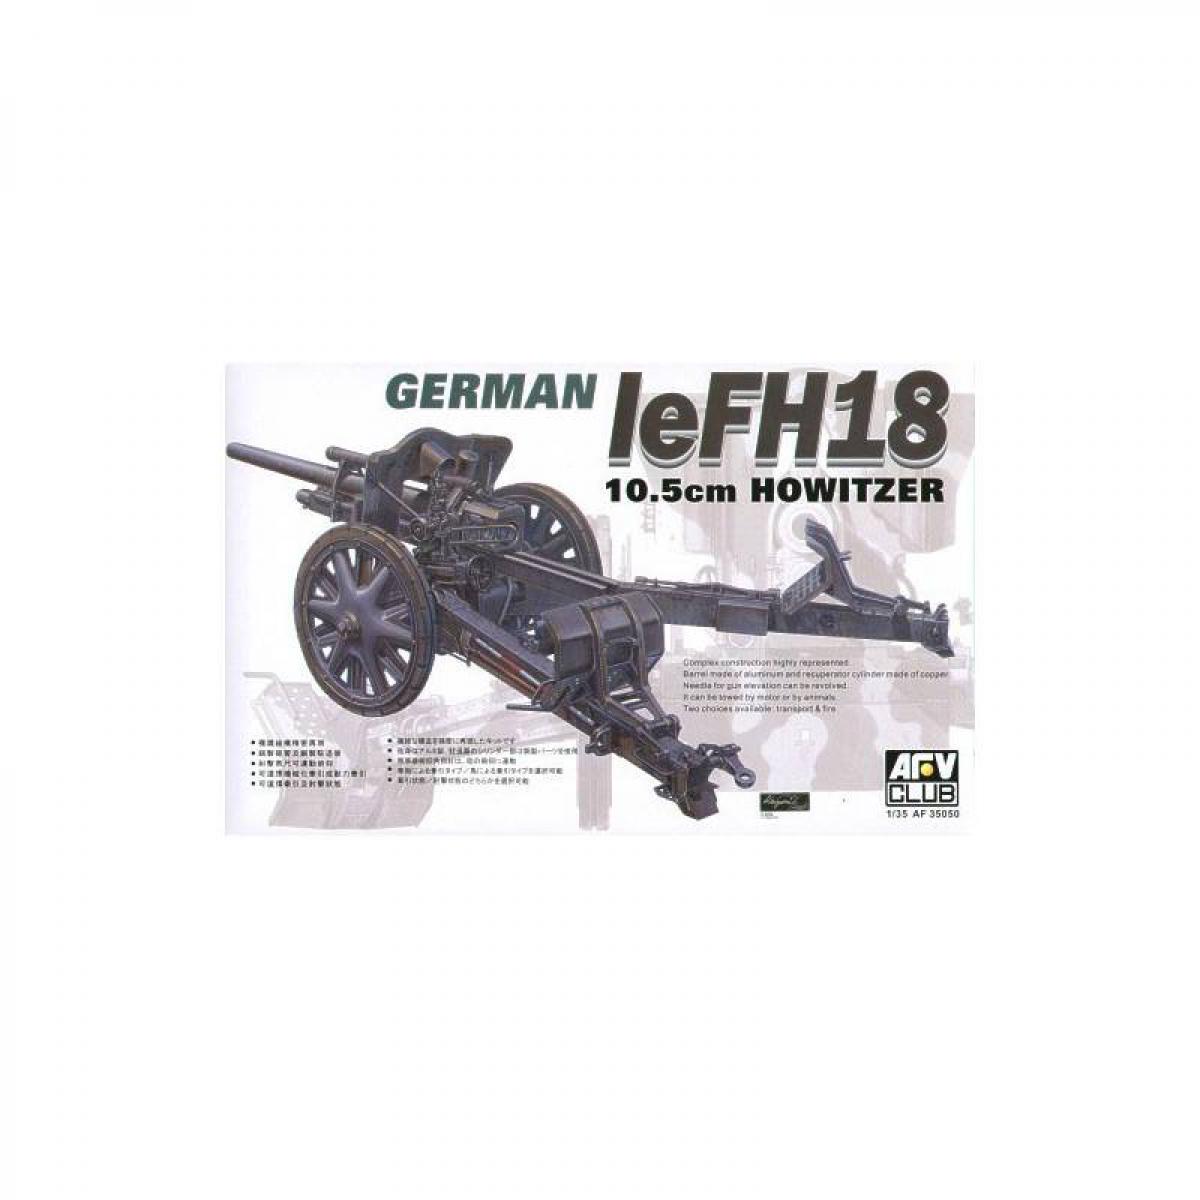 Afv Club - Maquette Véhicule German 10.5cm Lefh18 Howitzer - Voitures